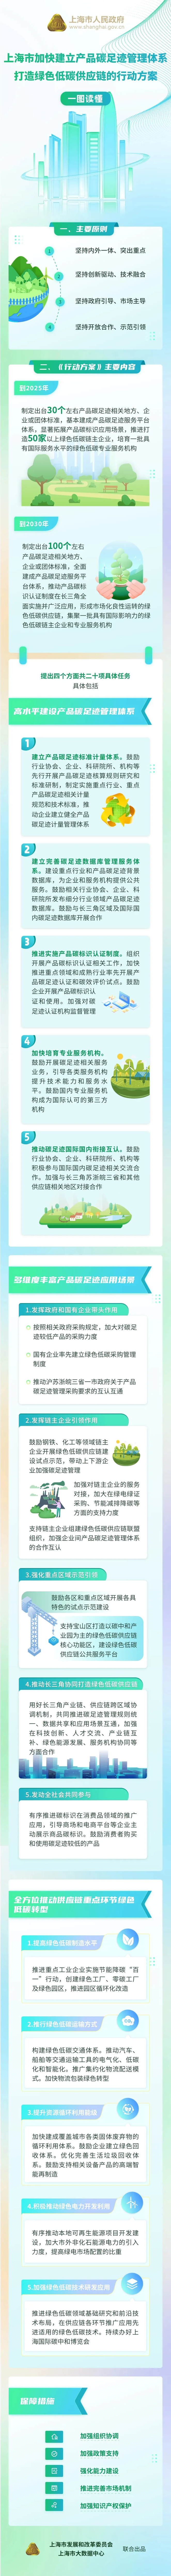 上海市印发《上海市加快建立产品碳足迹管理体系 打造绿色低碳供应链的行动方案》(附一图读懂)